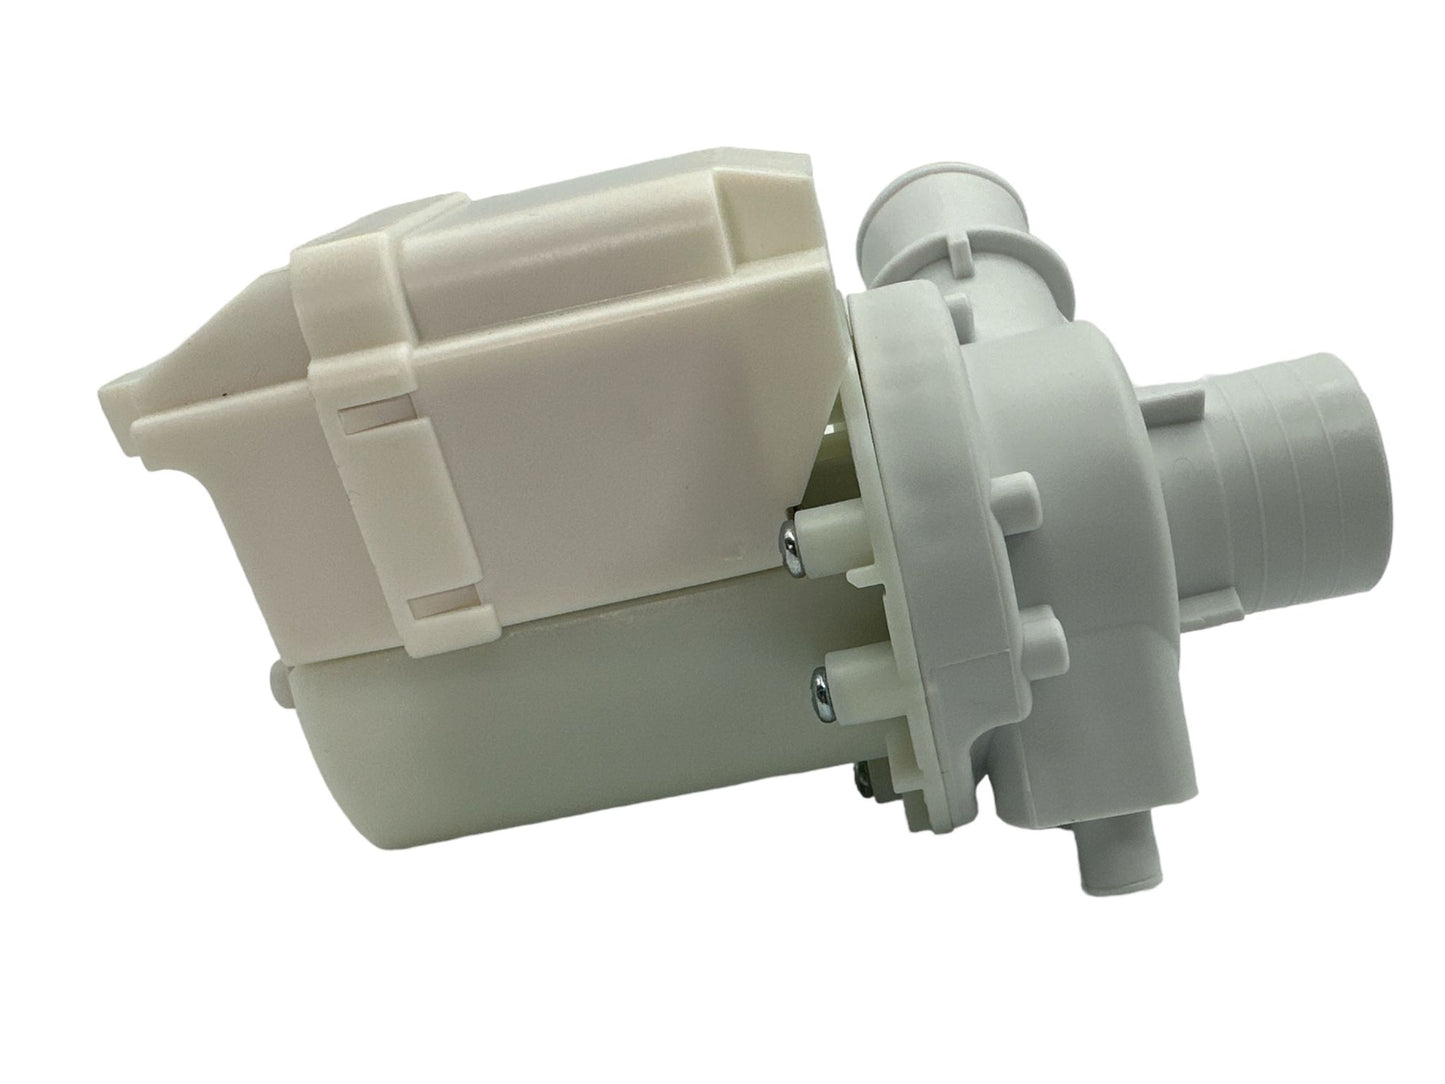 LG Washer Drain Pump Assembly - 5859EA1004F, Replaces: AHA74333301 2650695 AP5672257 PS7785505 EAP7785505 3110EA2003 DP040-012 PD00027395